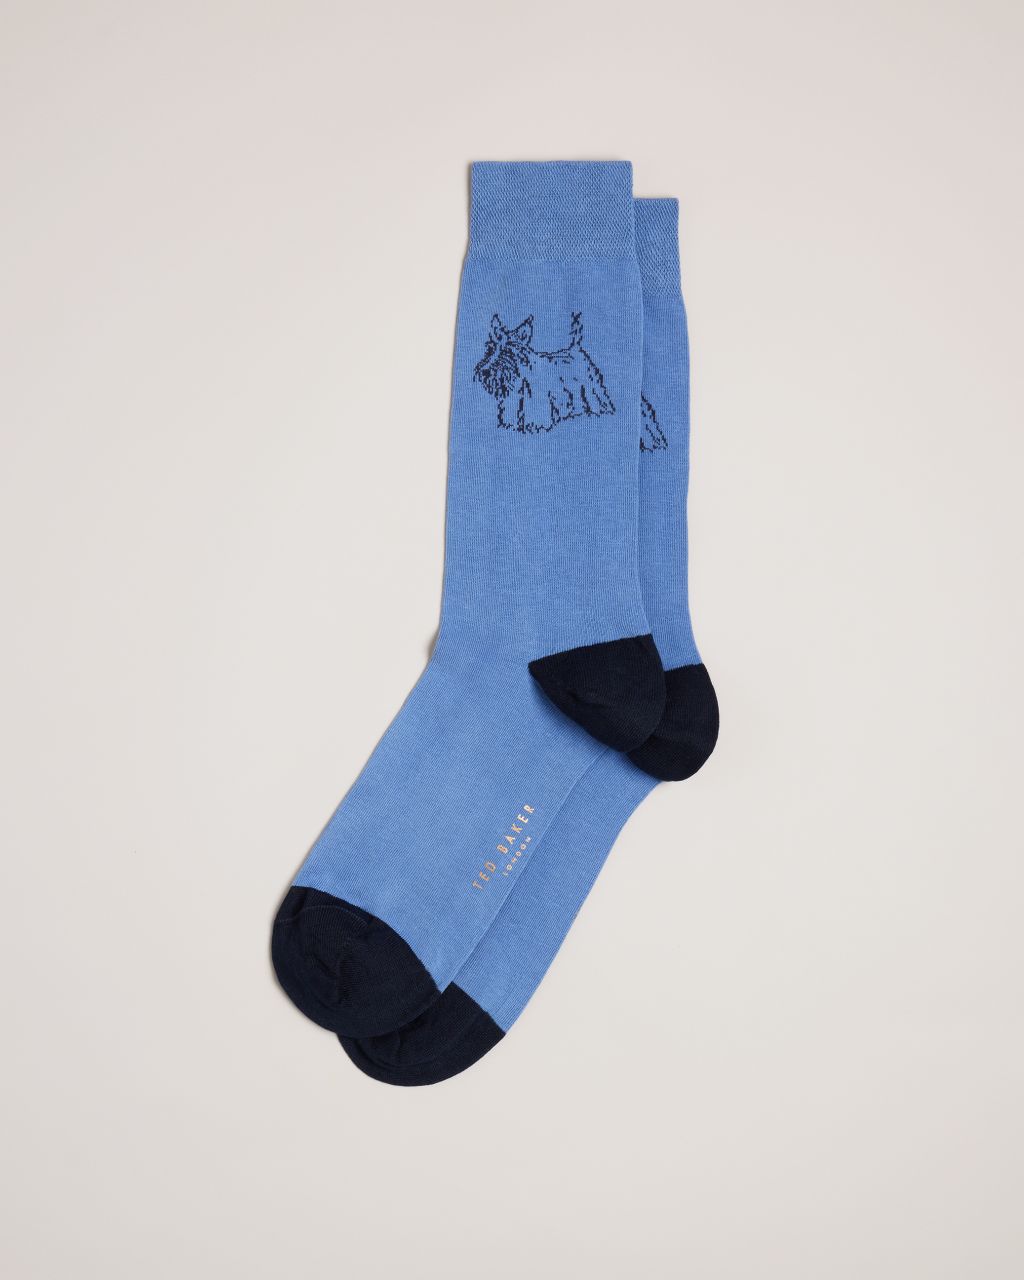 Men's Scottie Dog Print Socks in Blue, Dogsock, Cotton